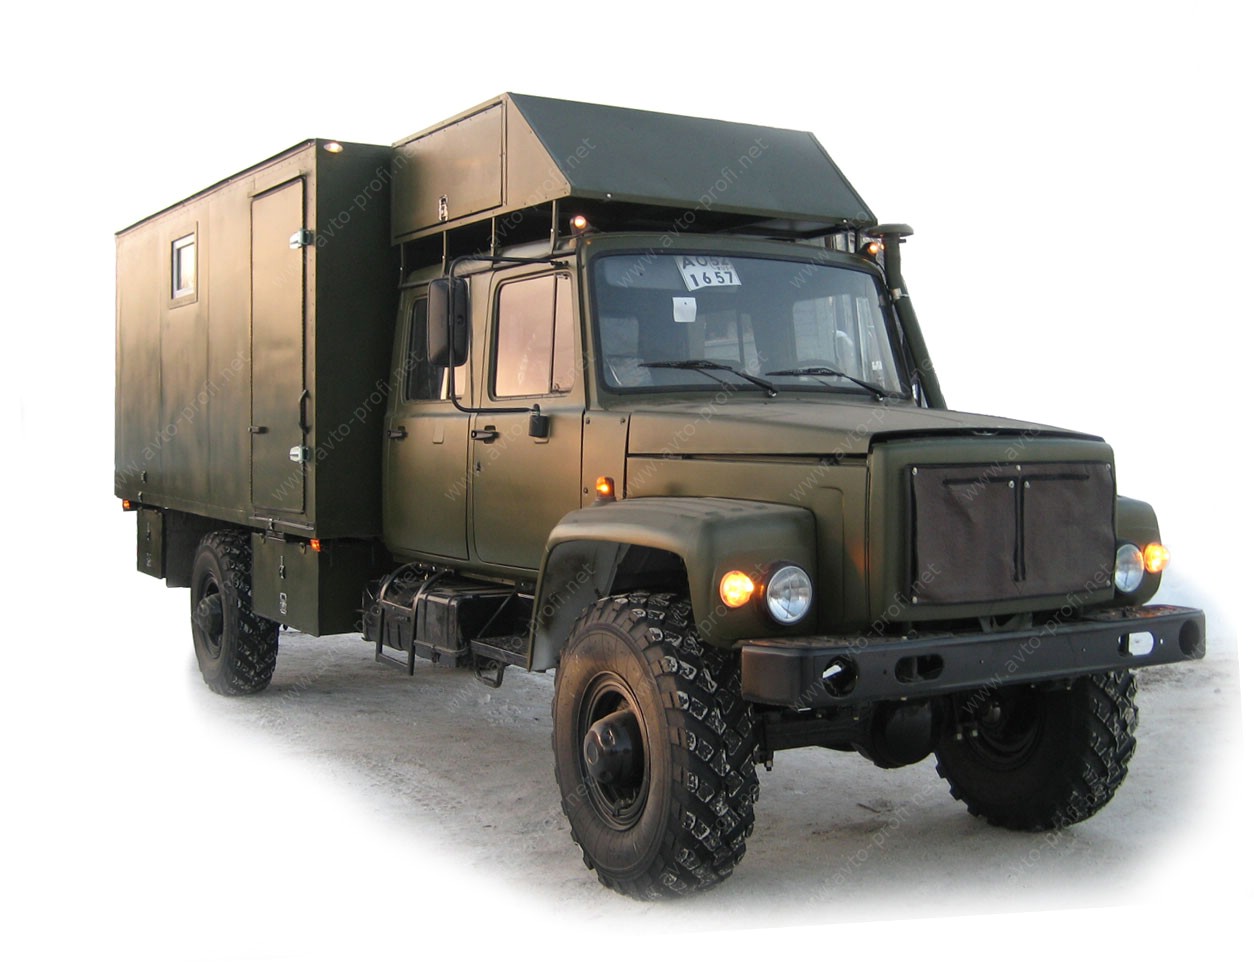 специальный автомобиль вездеход для активного отдыха на природе, охоты и рыбалки на базе ГАЗ-33081 ЕГЕРЬ-2 со сдвоенной кабиной и багажным отделением